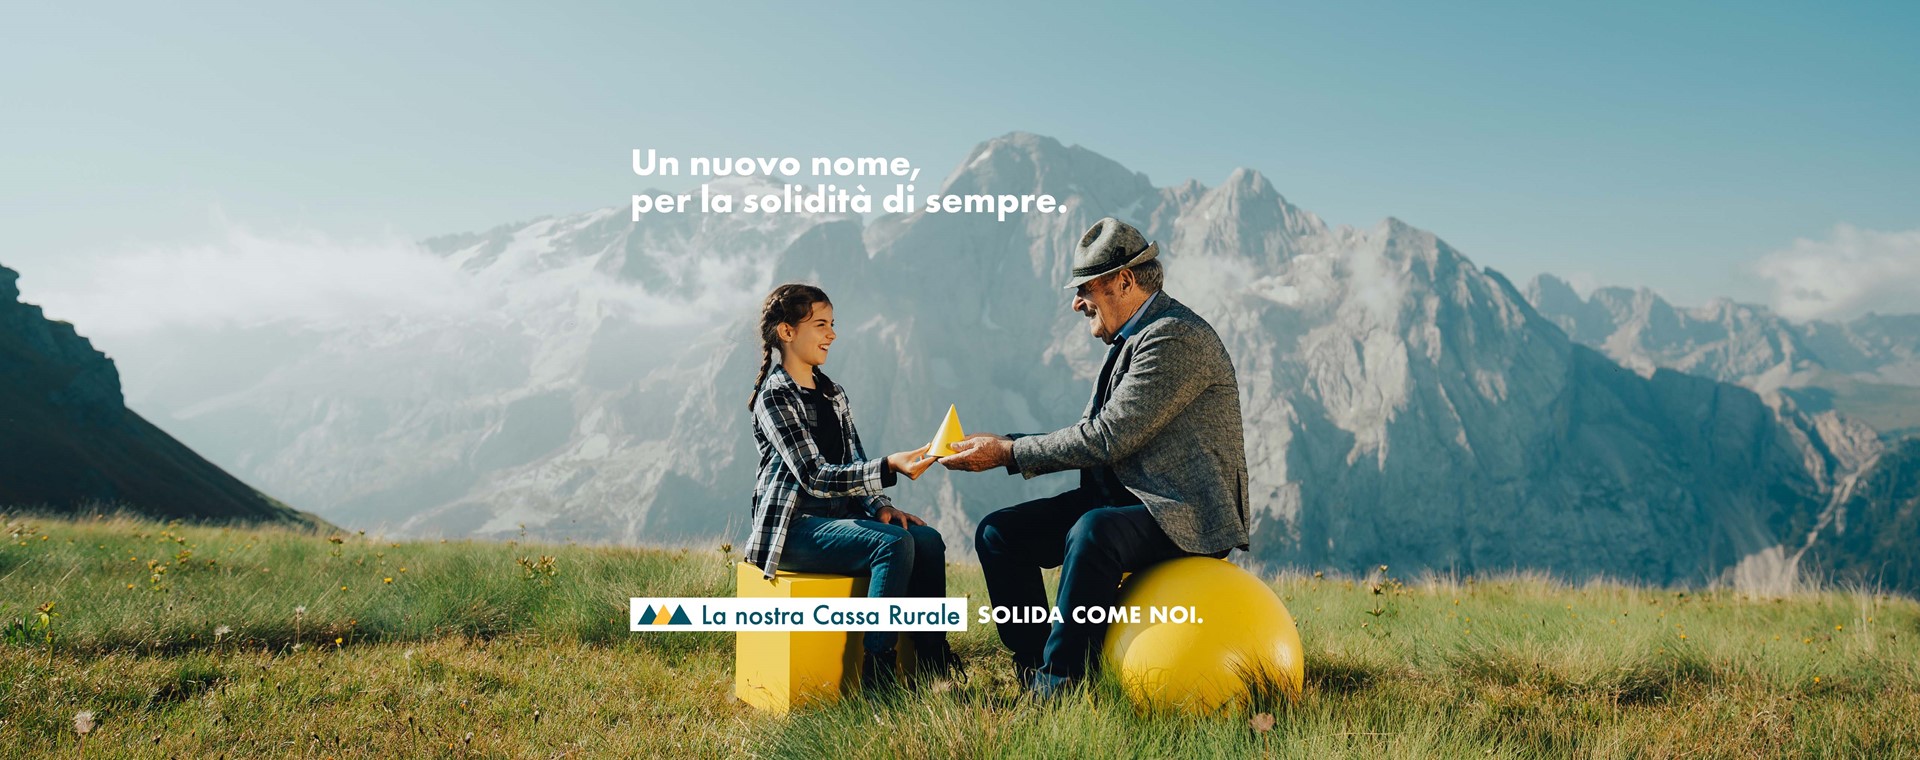 Dal 1° agosto il nuovo nome di Cassa Rurale Dolomiti sarà FPB CASSA DI FASSA PRIMIERO BELLUNO 